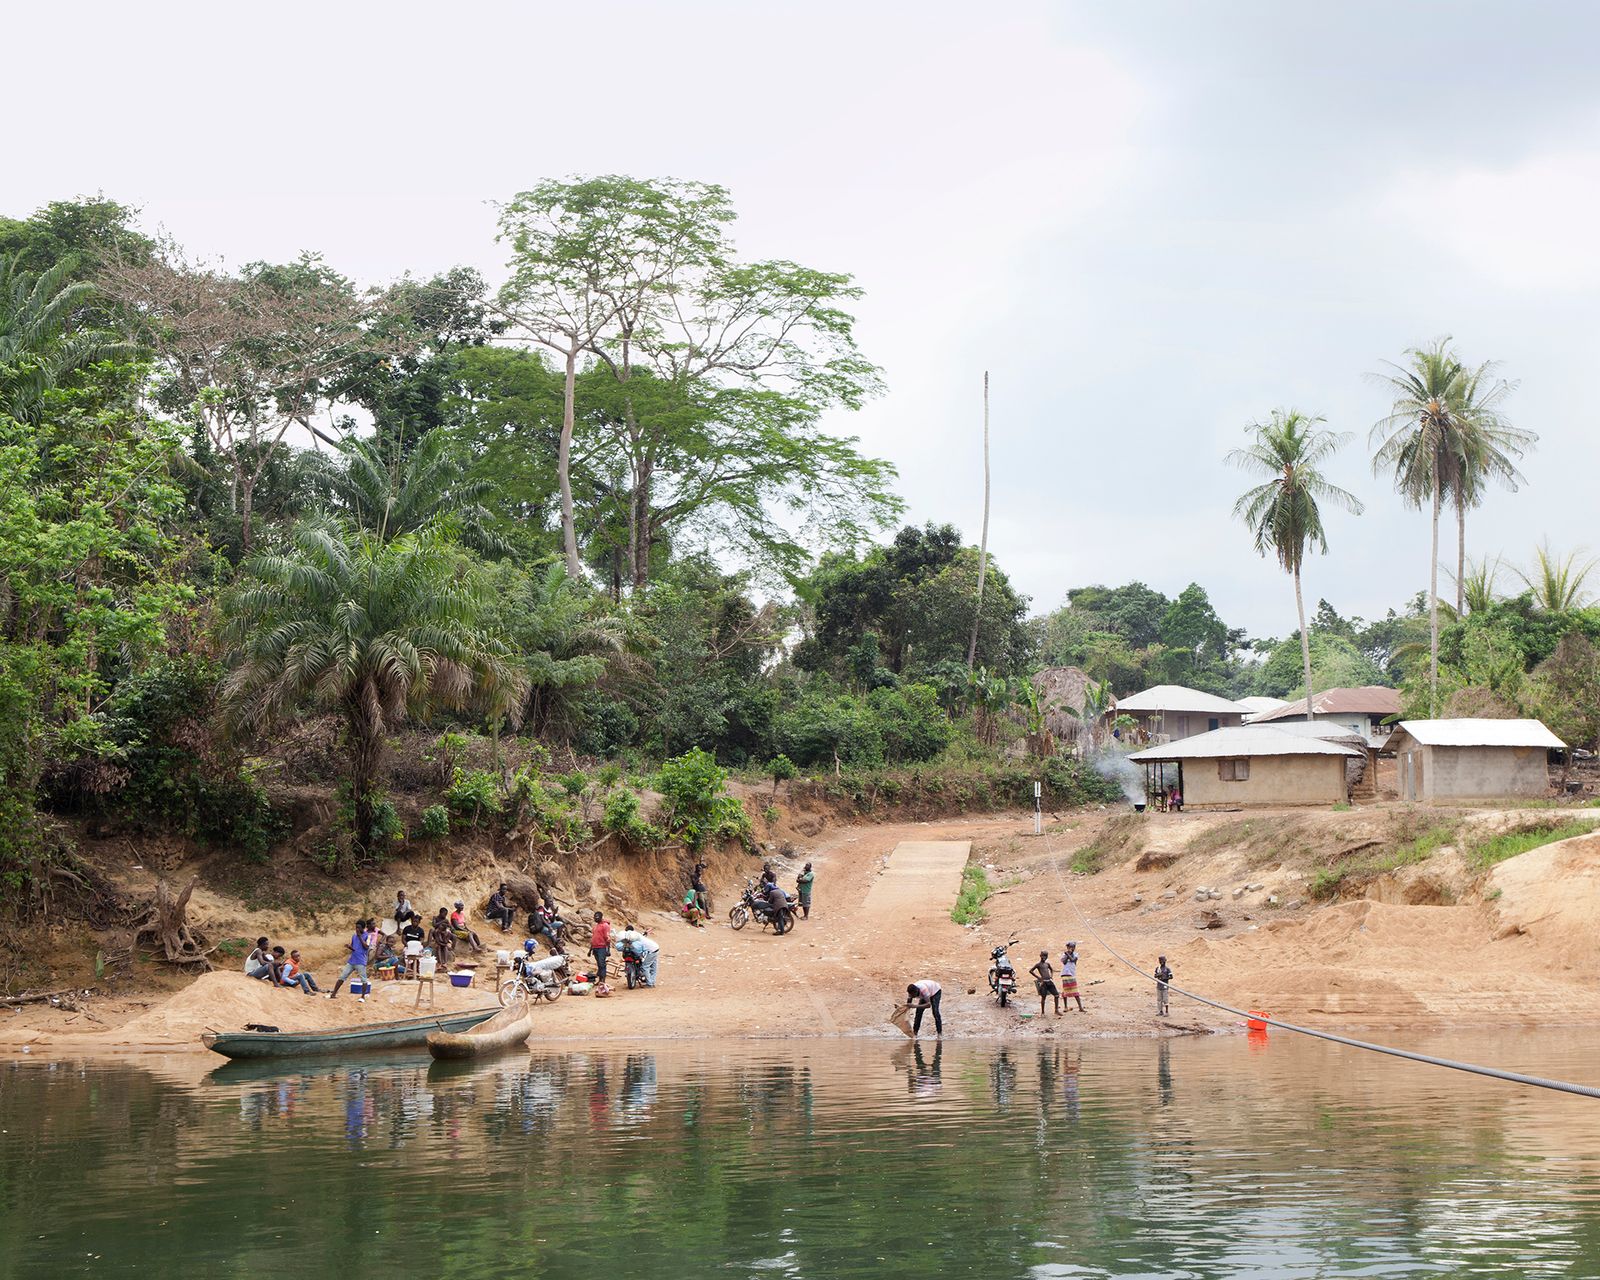 © Valeria Scrilatti - Mattru, Bonthe District (Sierra Leone). The river to cross to reach the town of Mattru, capital of the district.